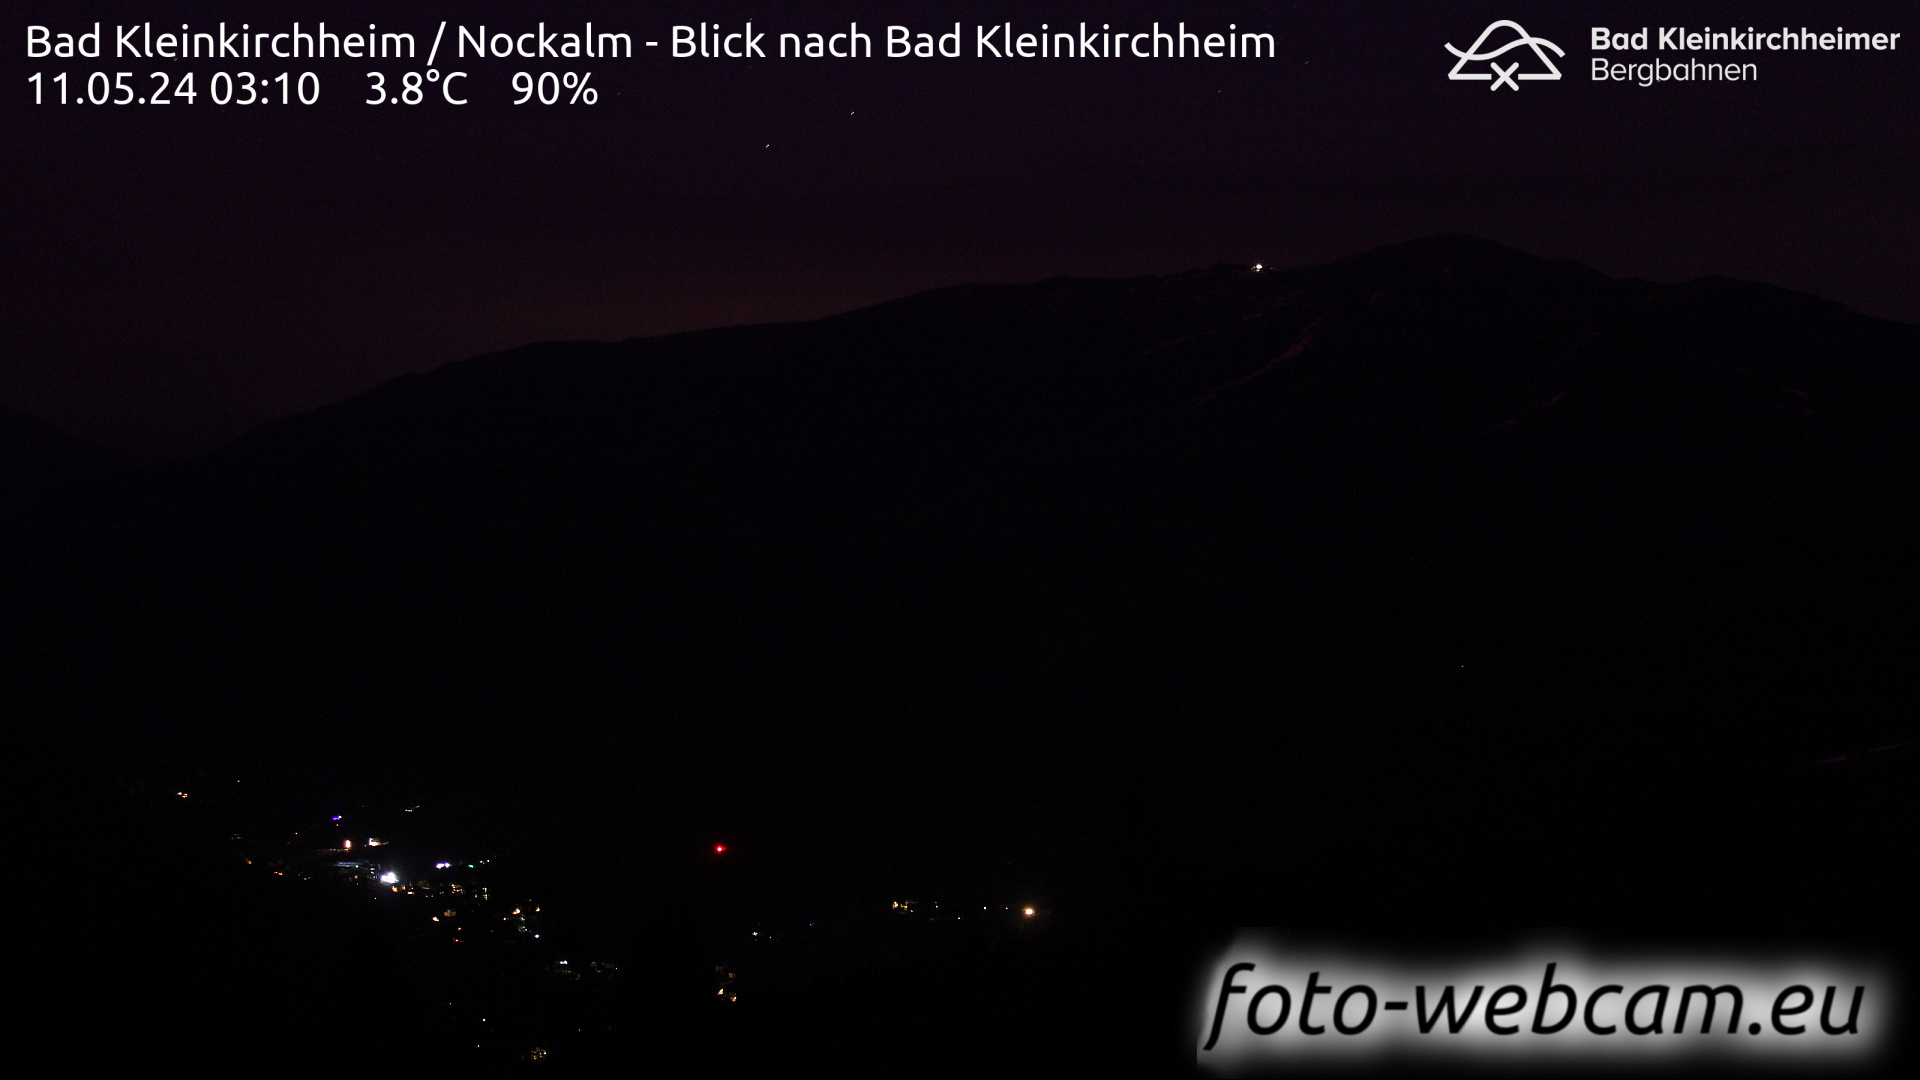 Bad Kleinkirchheim Lun. 03:17